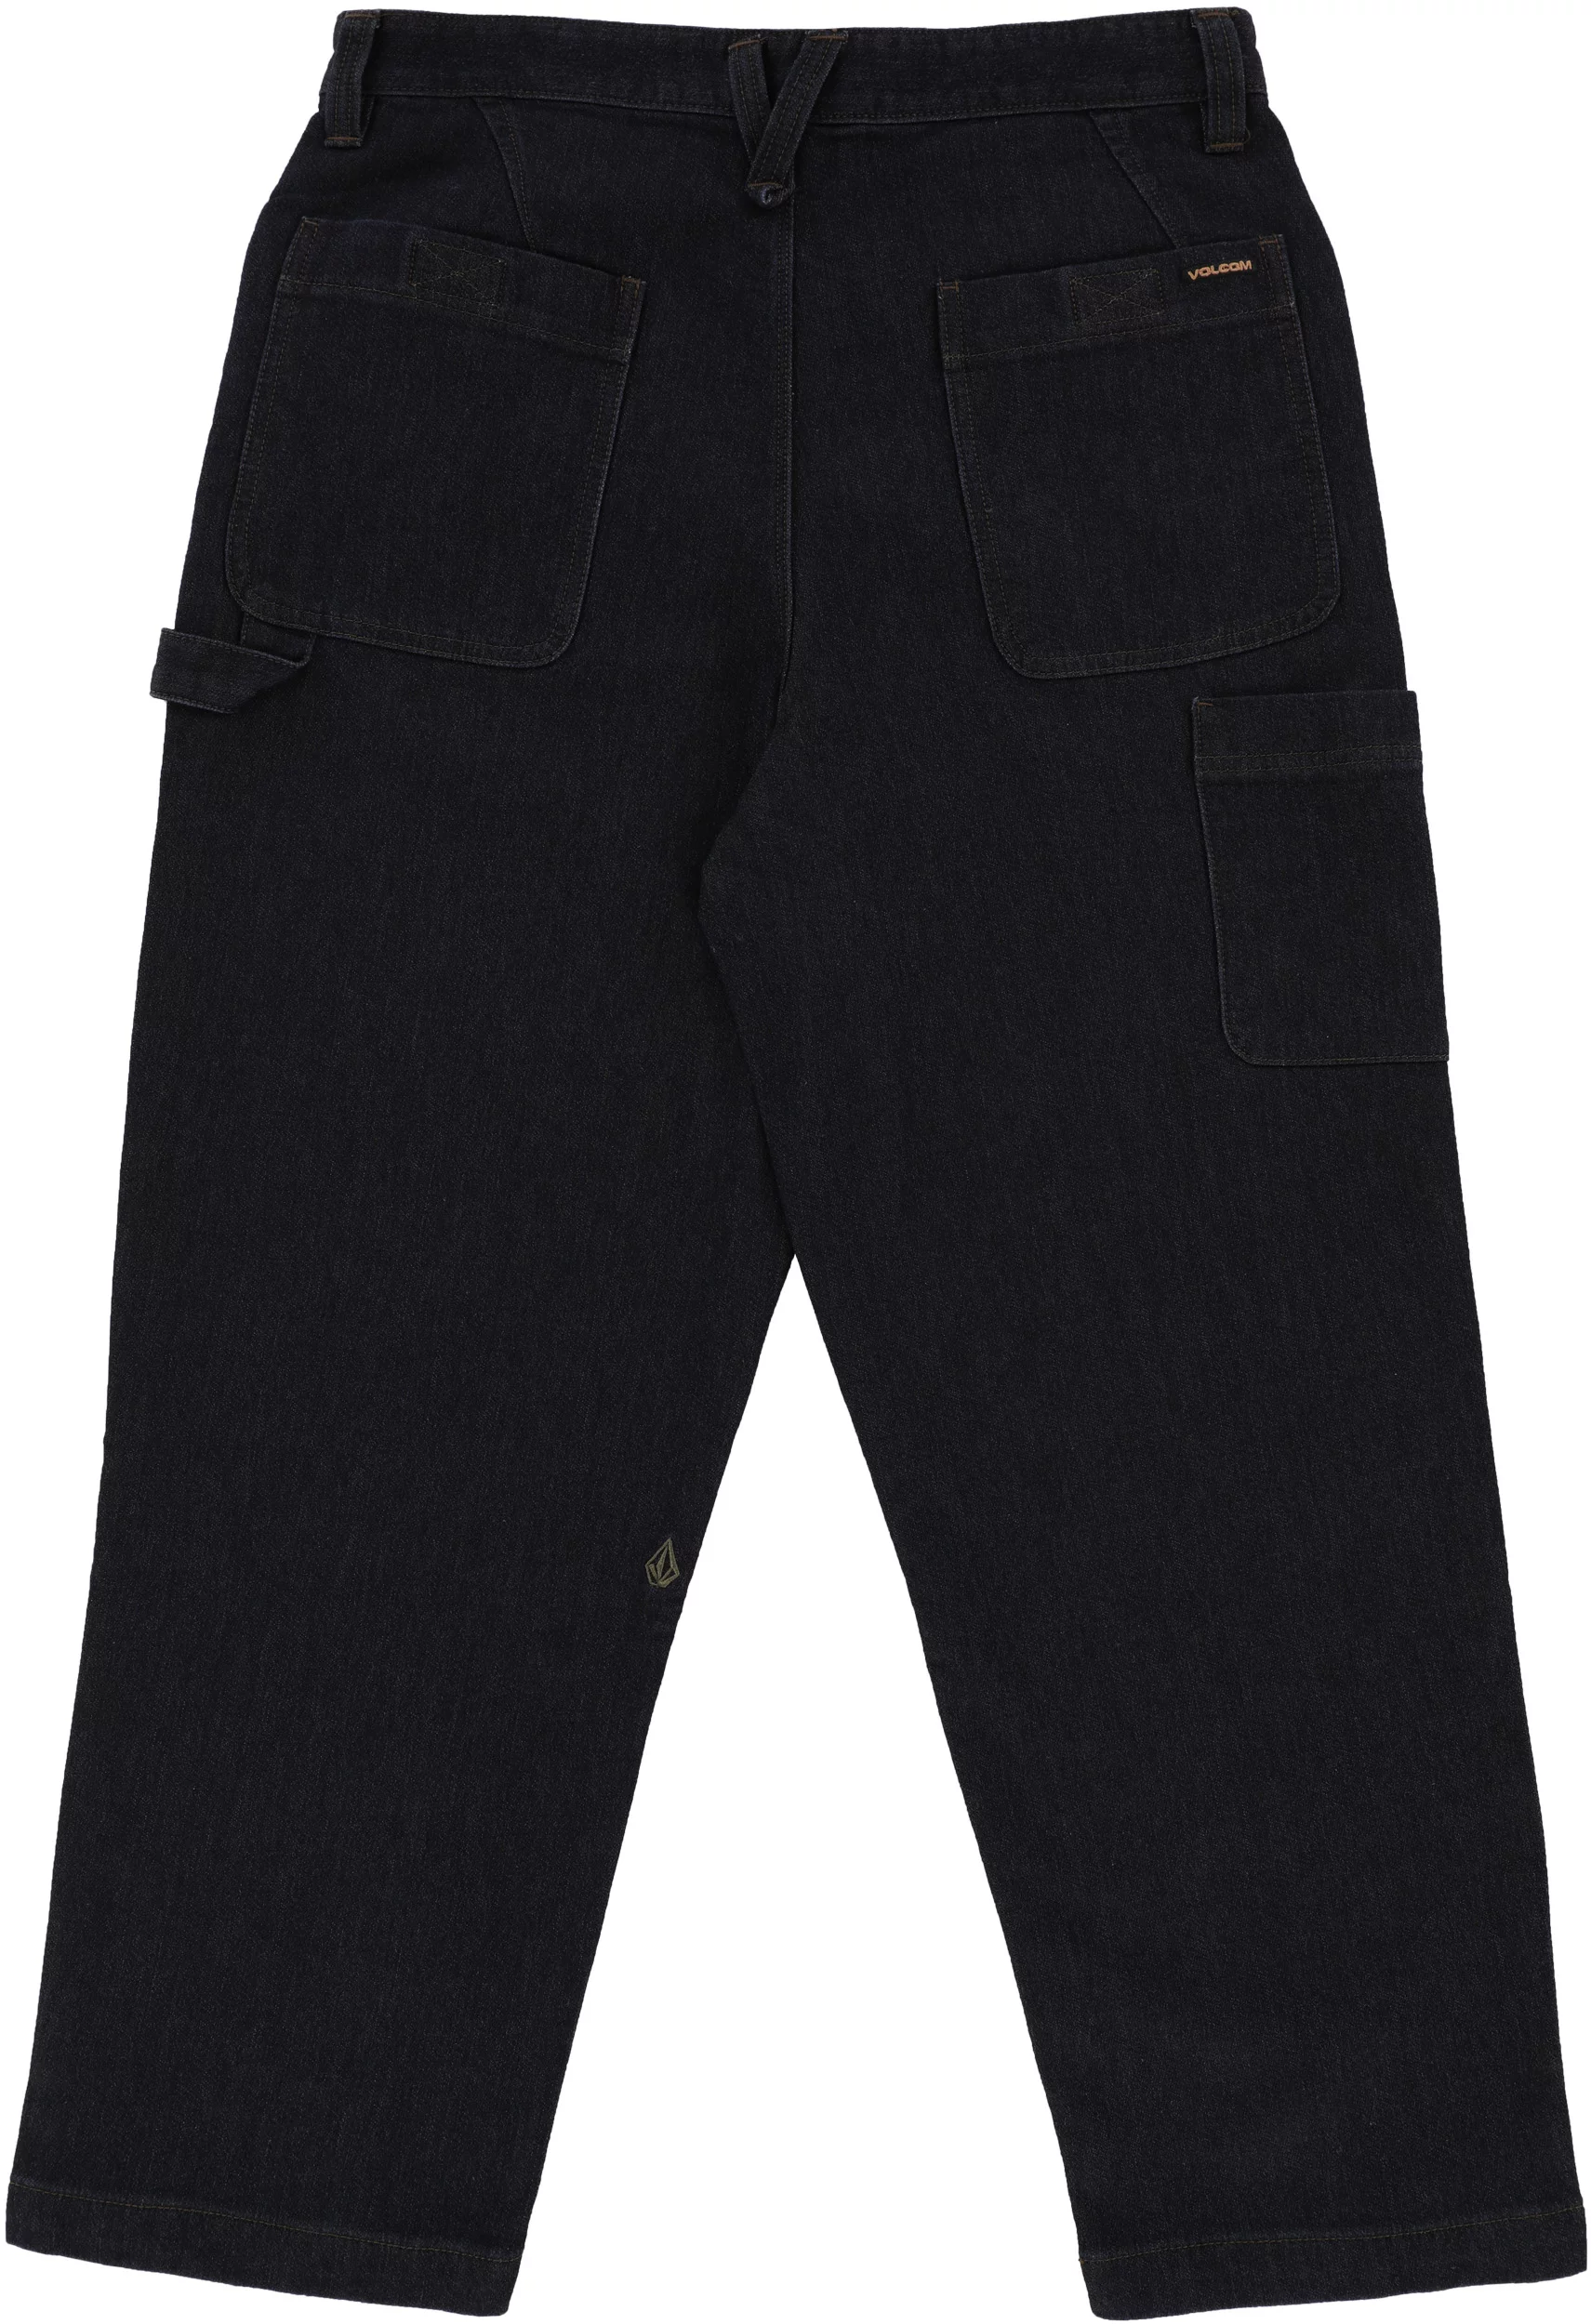 Volcom Kraftsman Jeans - baja indigo | Tactics